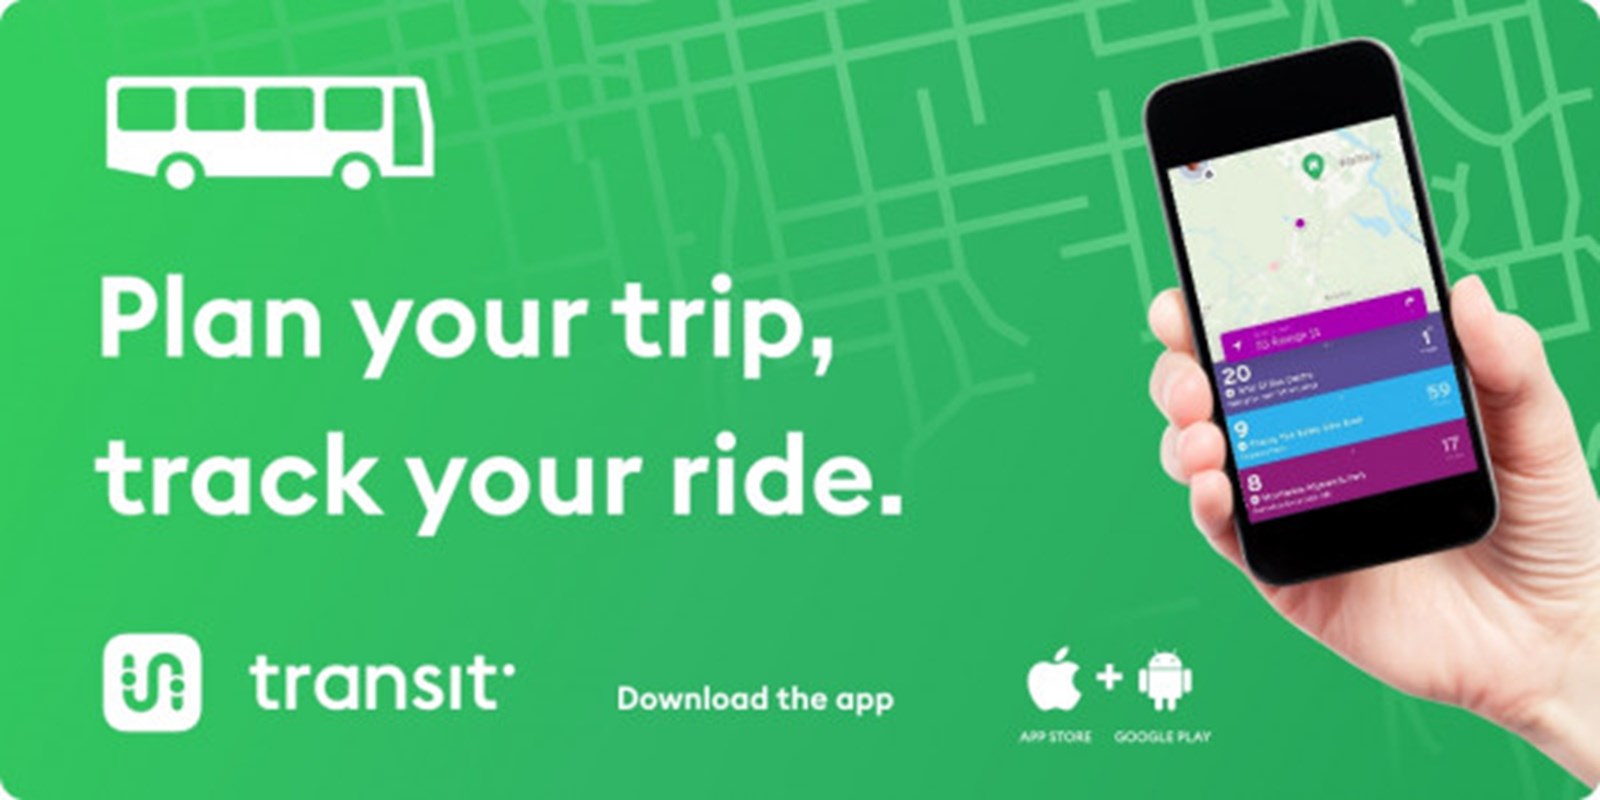 Transit app promo tile.